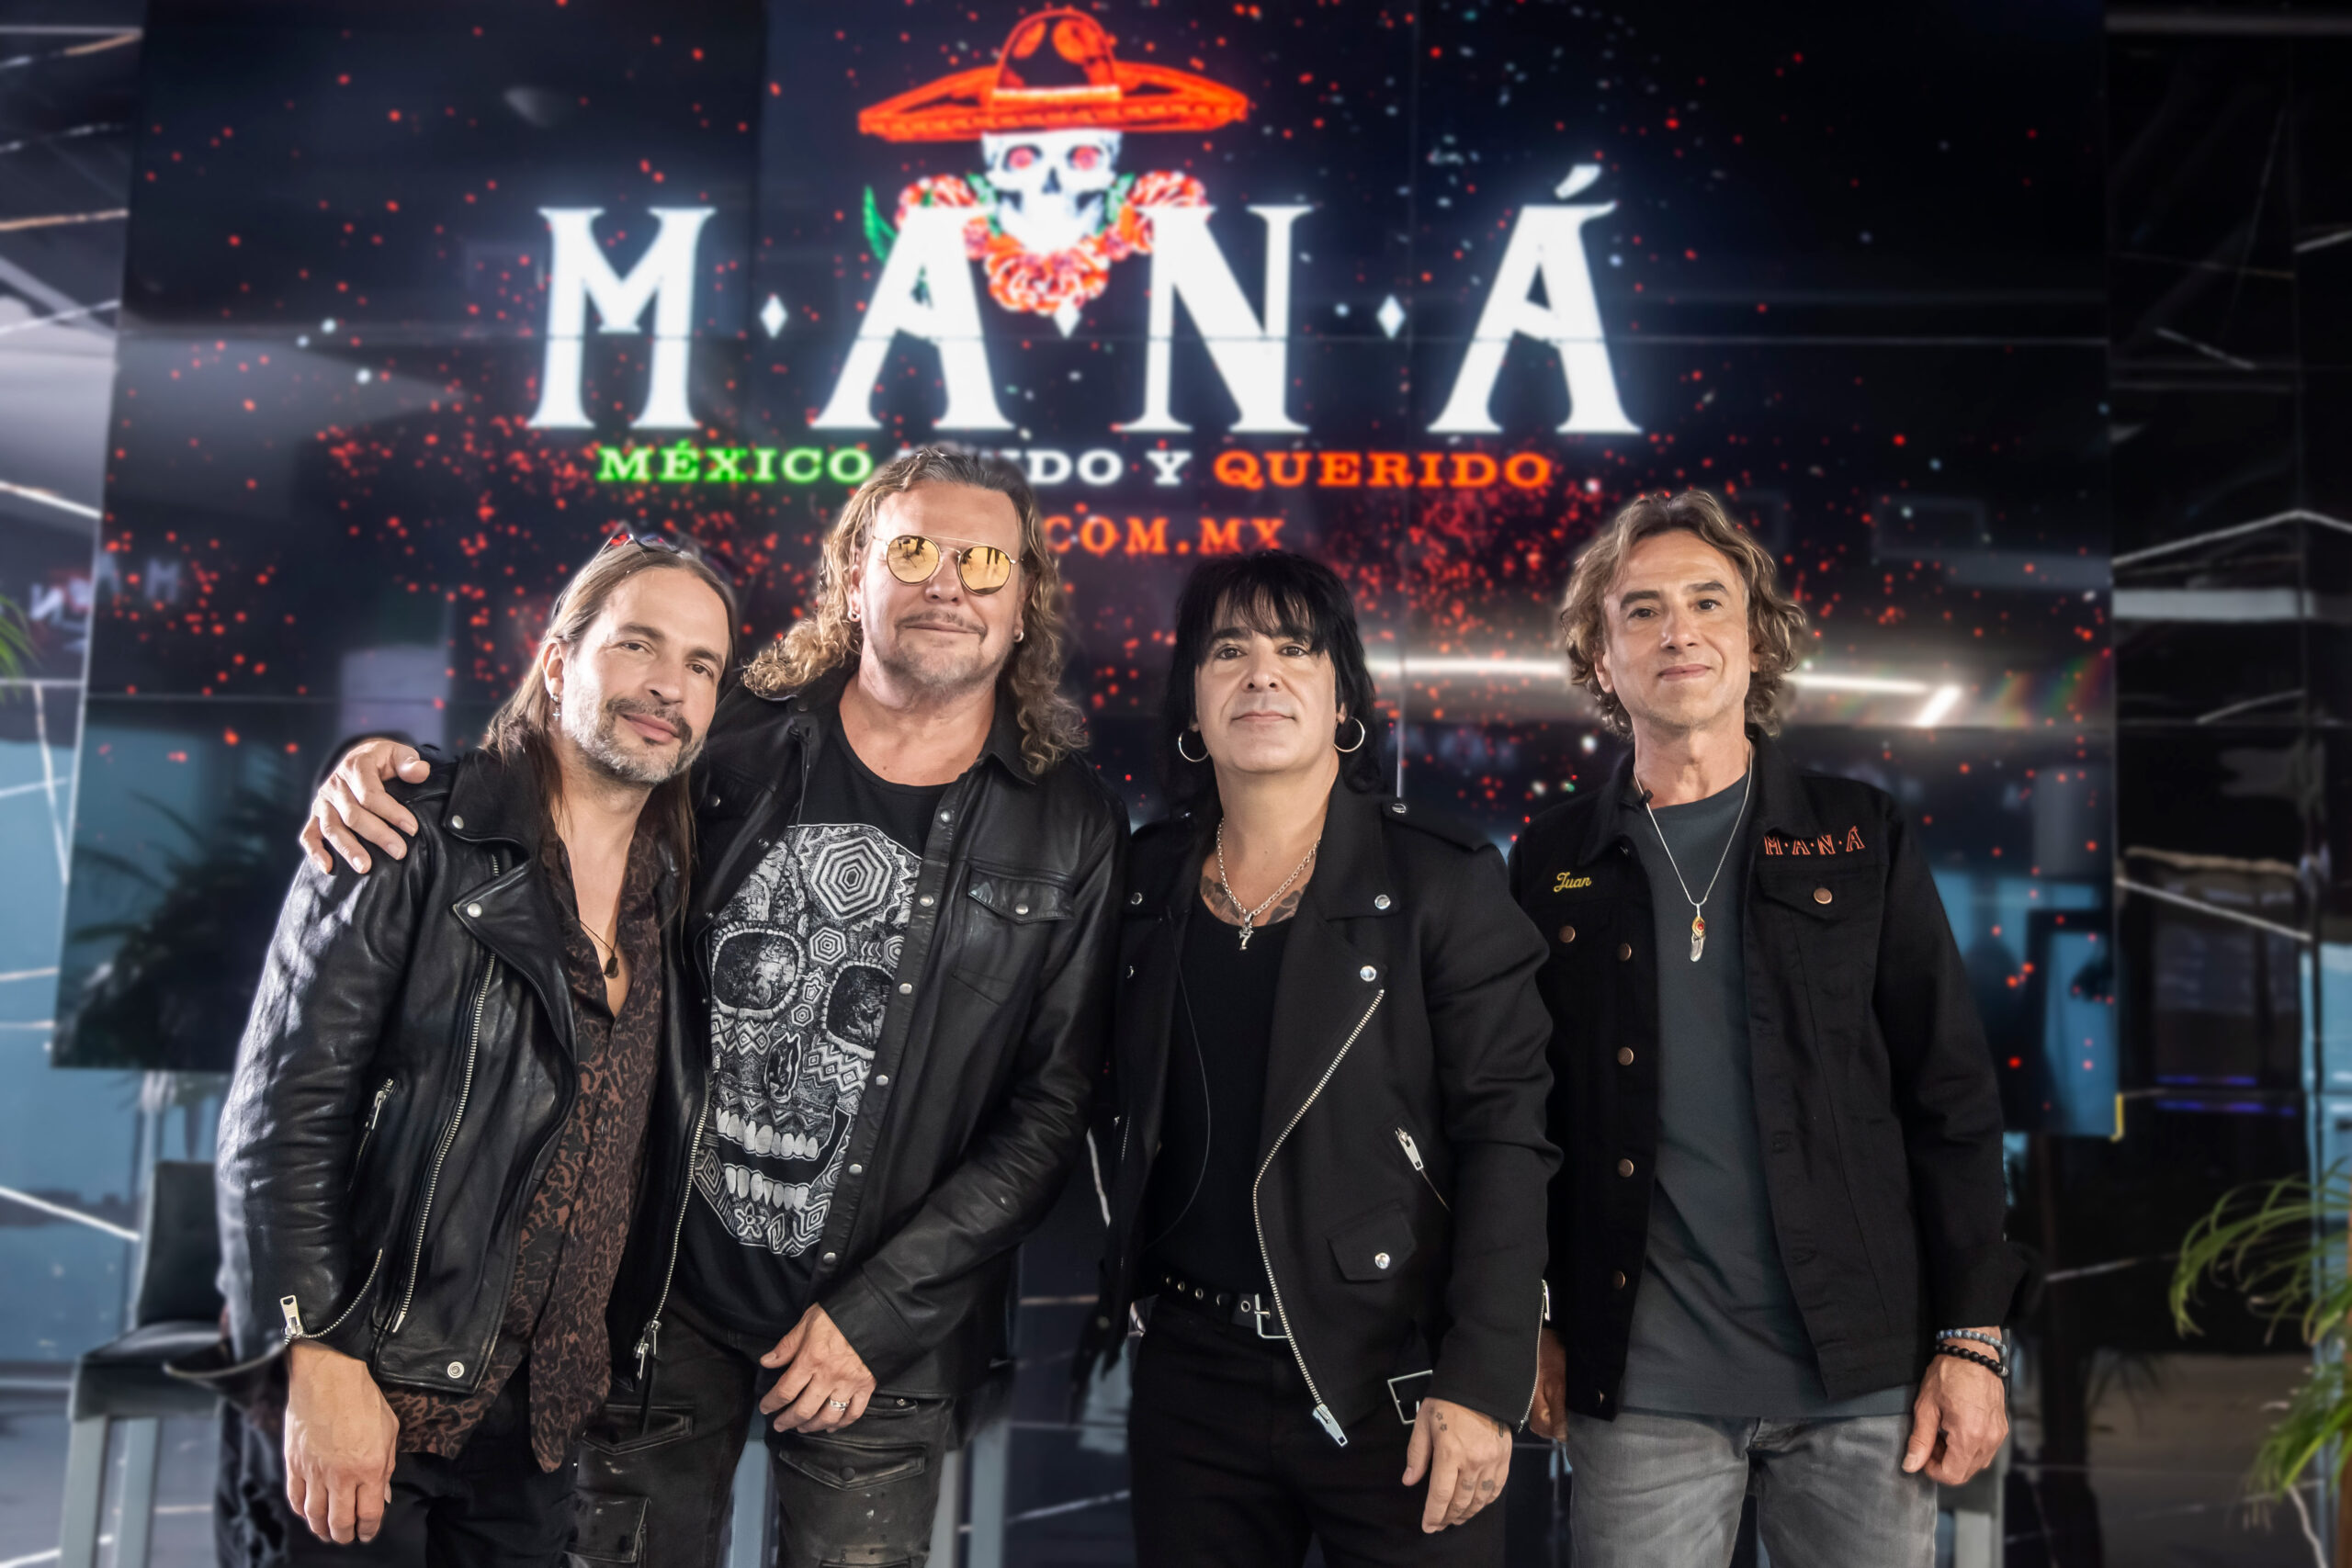 Maná anuncia su gira "México lindo y querido" Queretarock Music